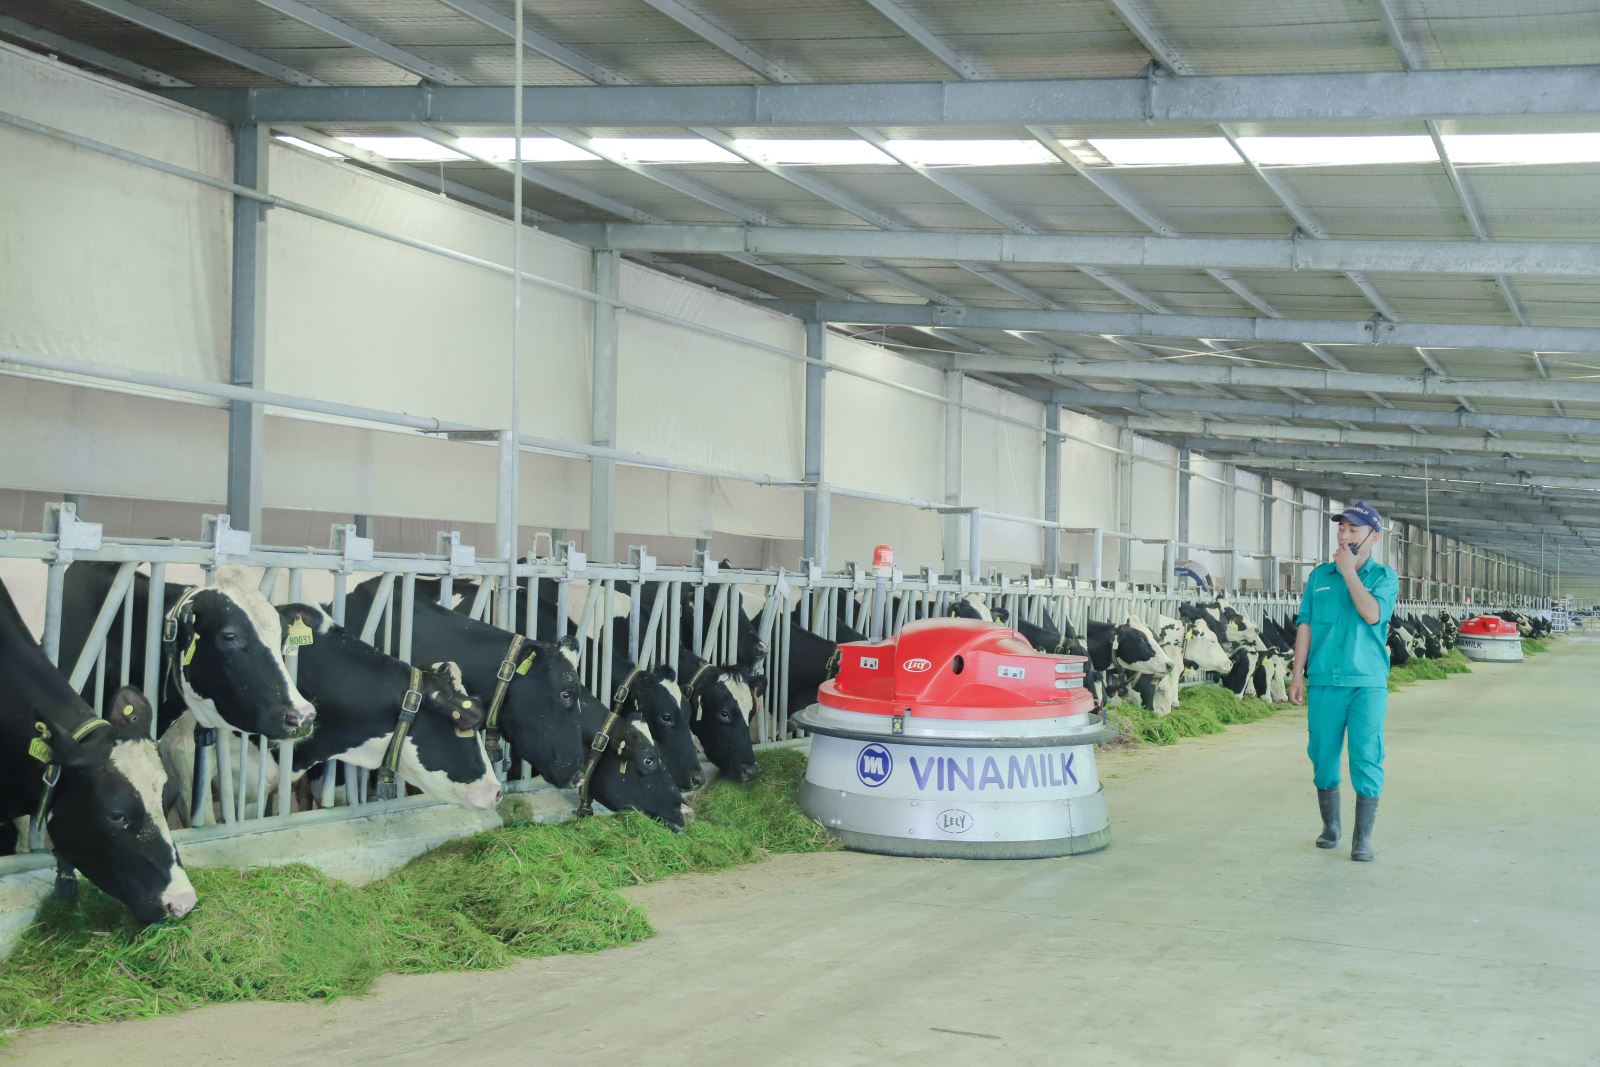 Vinamilk hiện có 13 trang trại bò sữa chuẩn quốc tế trên cả nước